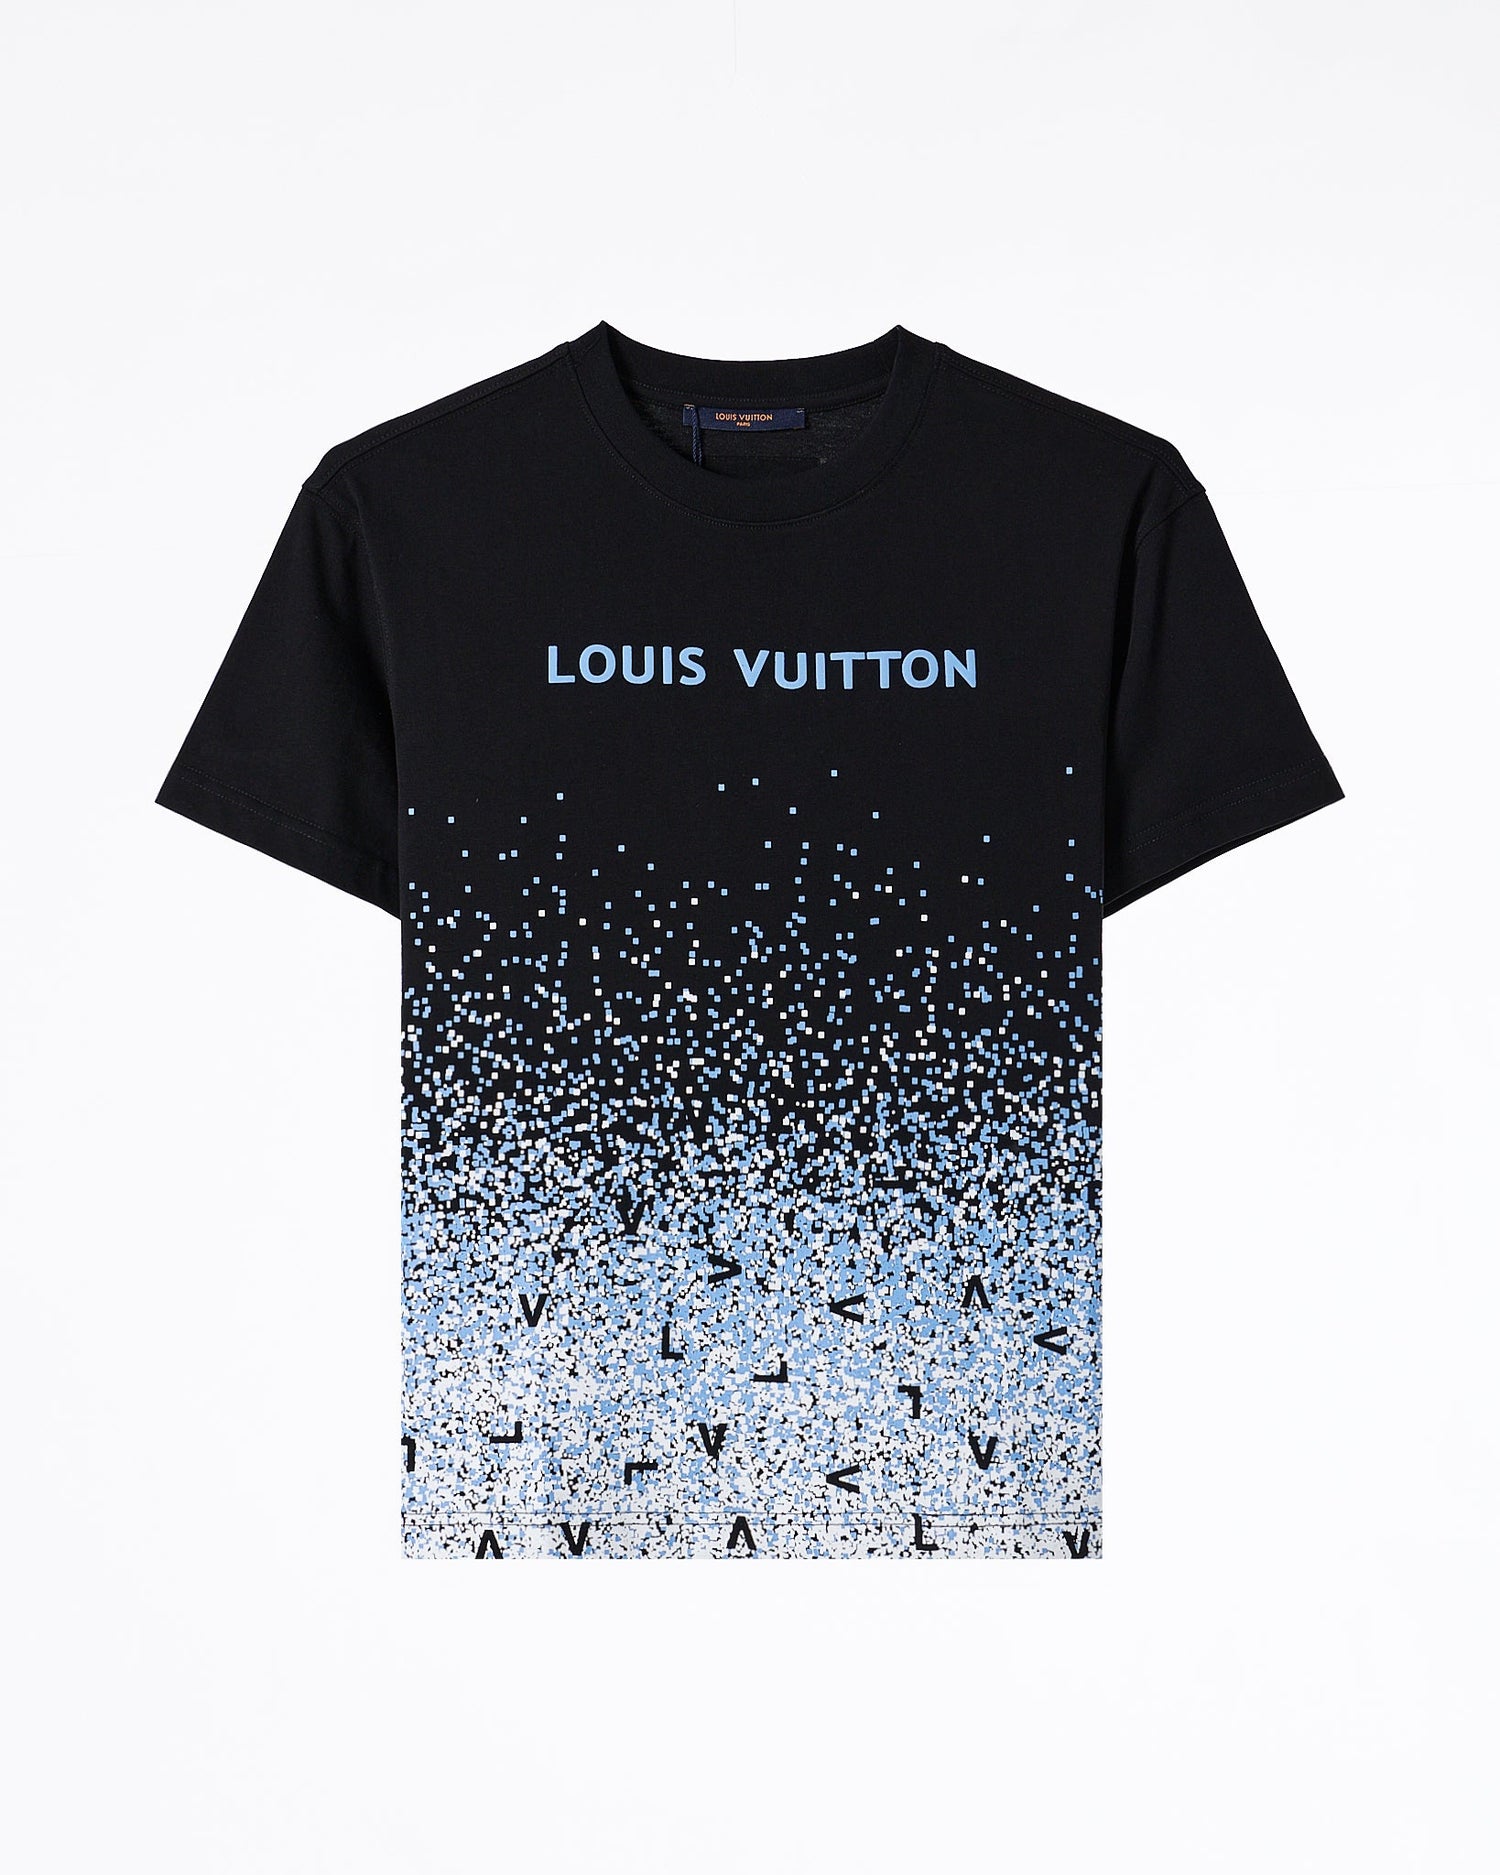 LV Monogram Velvet Over Printed Men T-Shirt 54.90 - MOI OUTFIT